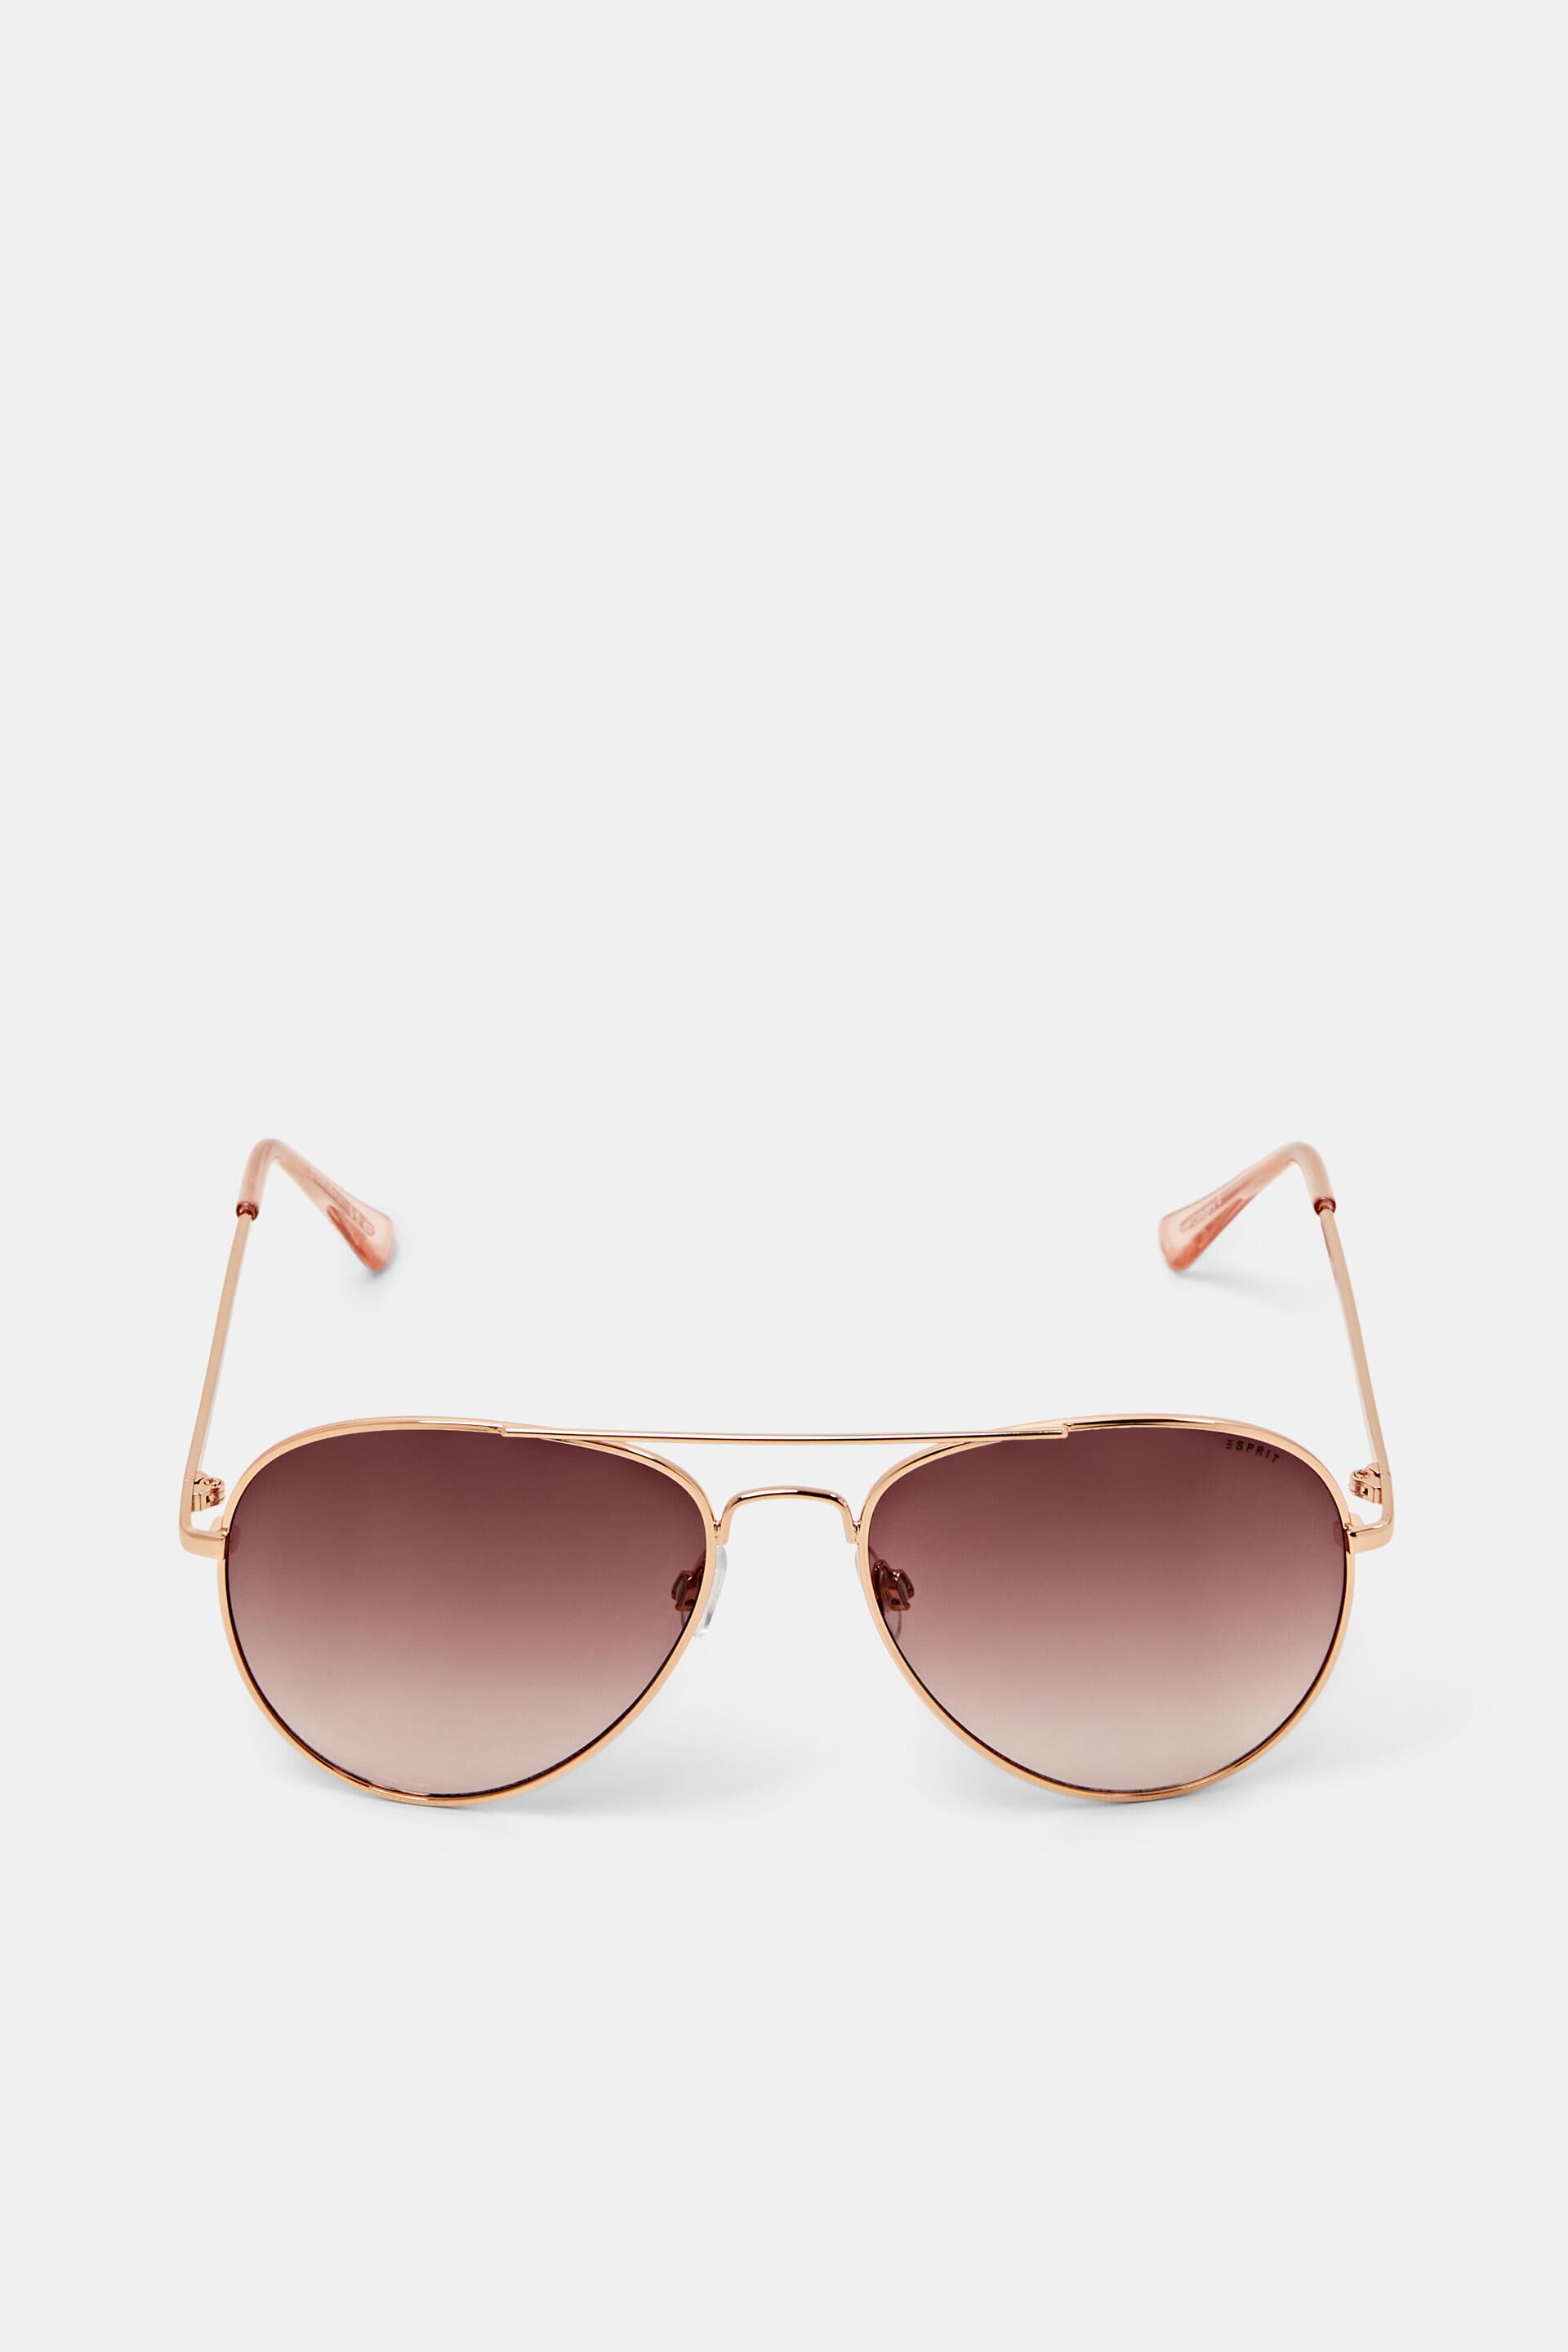 Esprit Mode Unisex aviator sunglasses with rose tinted lenses